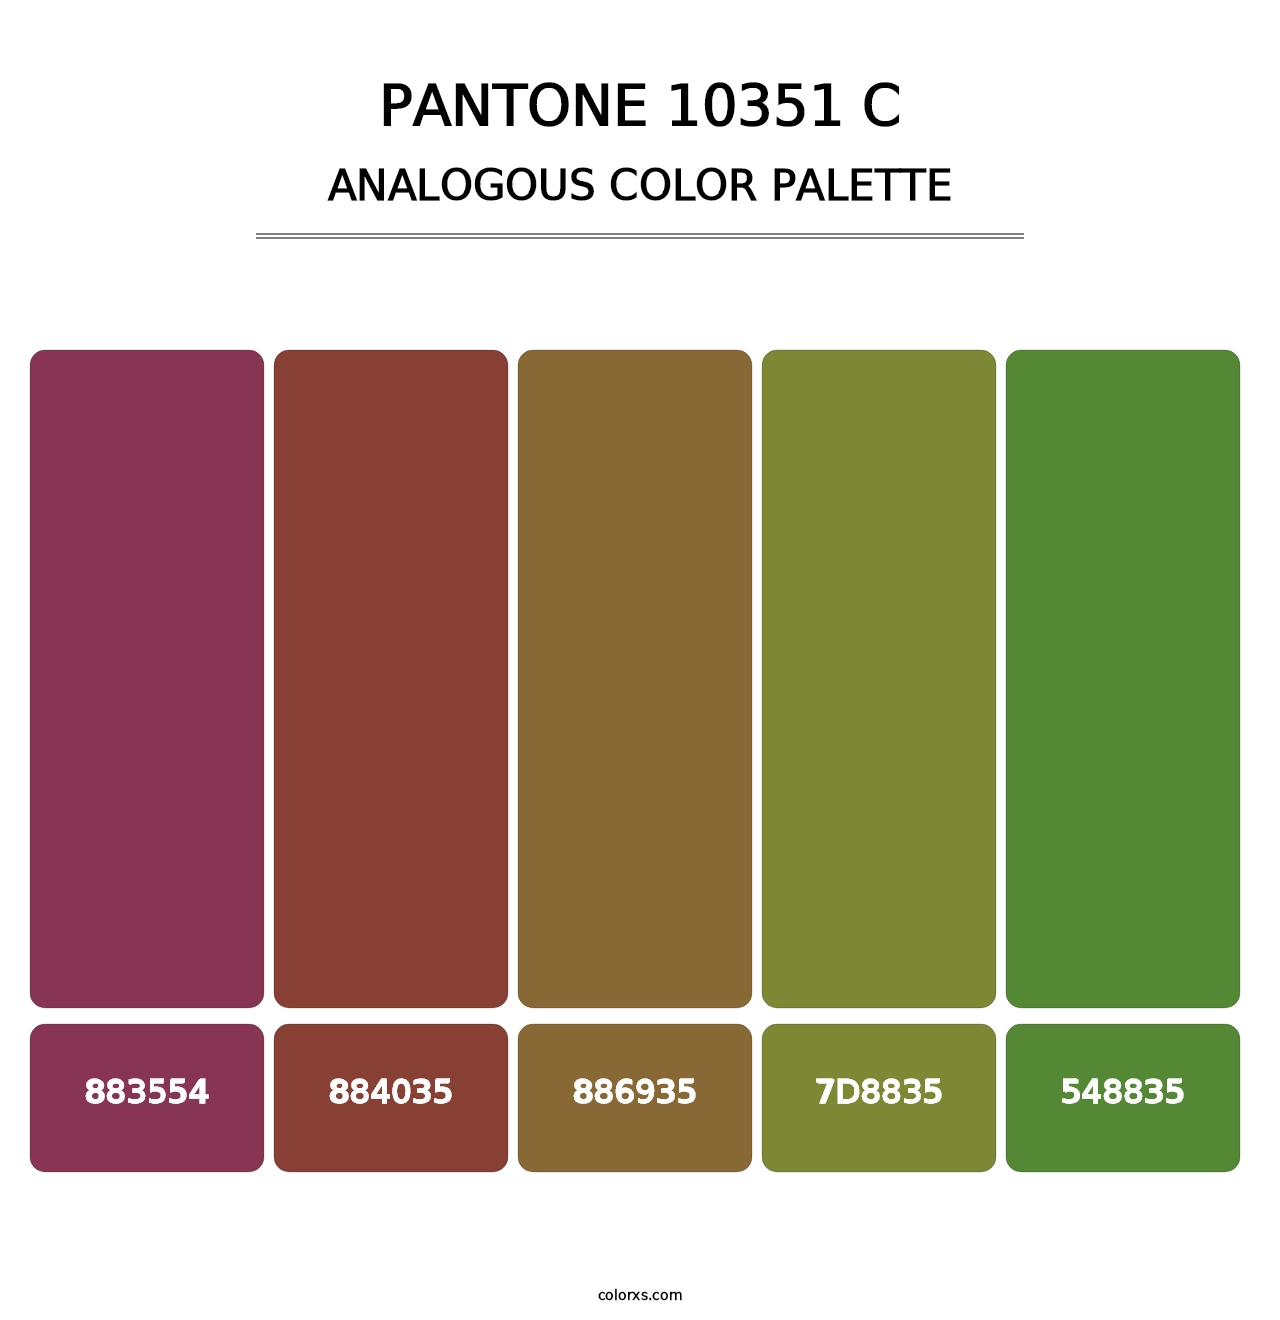 PANTONE 10351 C - Analogous Color Palette